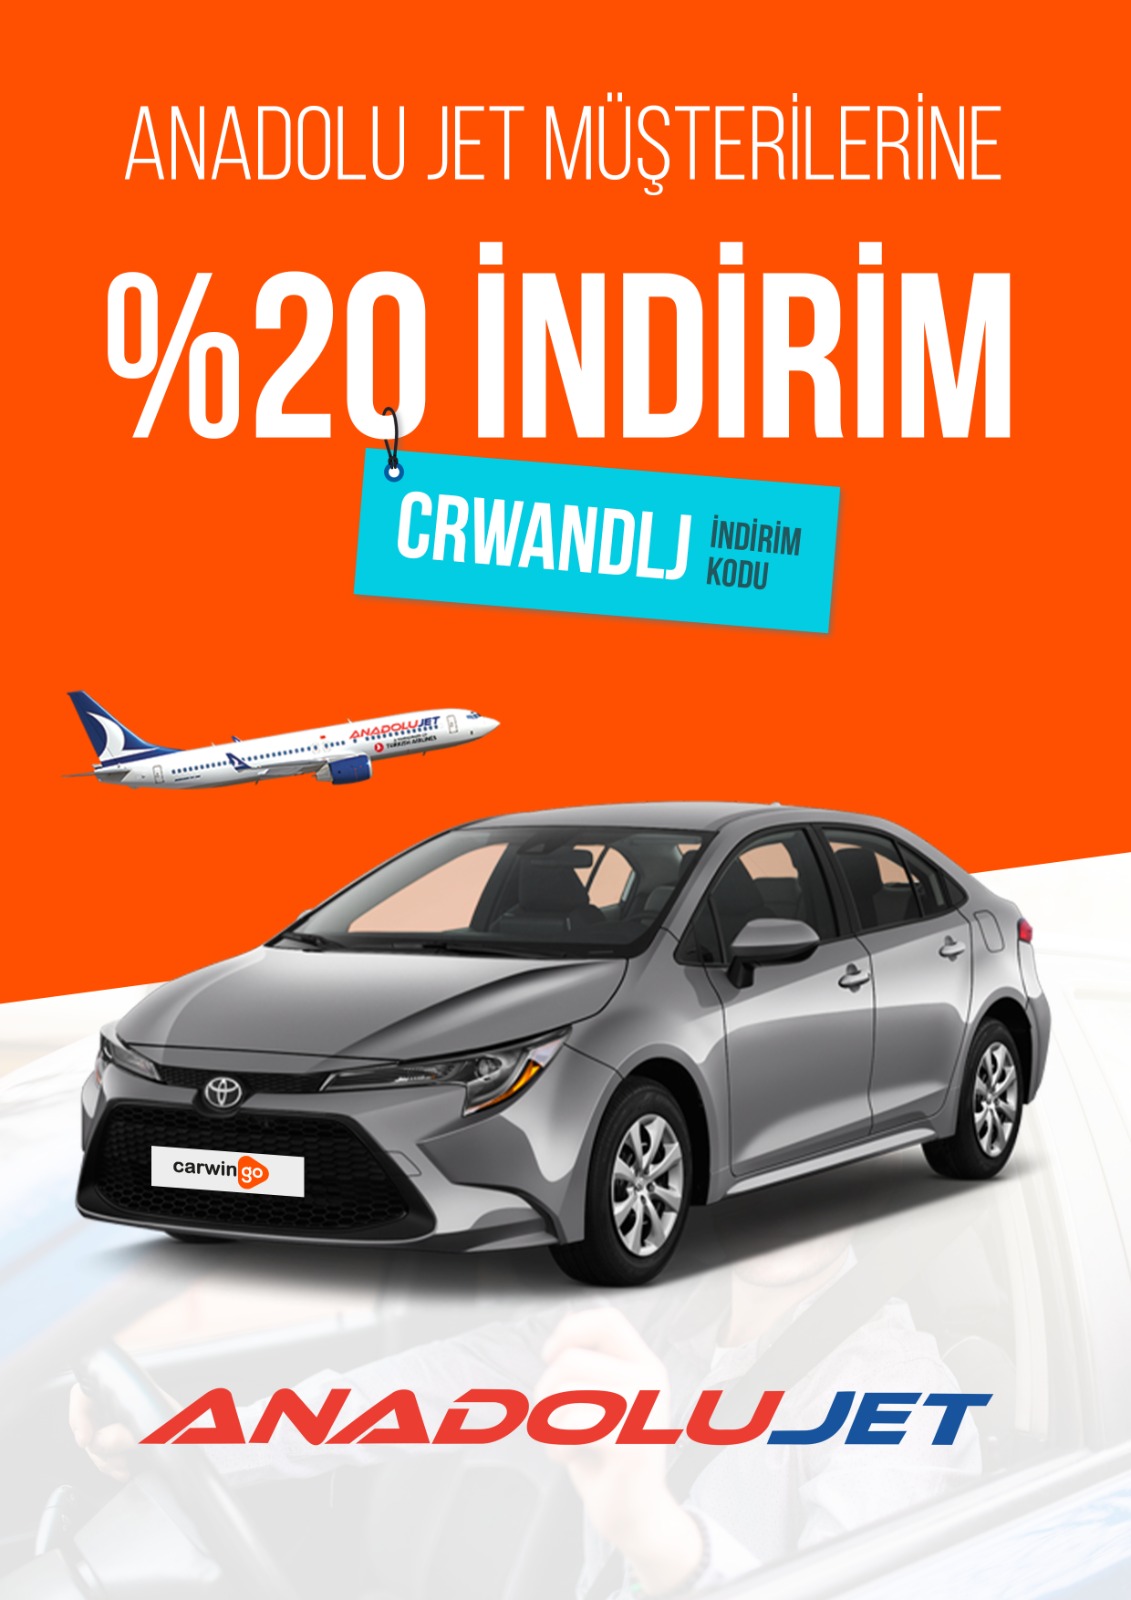 Anadolu Jet Müşterilerine %20 İndirim Fırsatı Carwingo'da